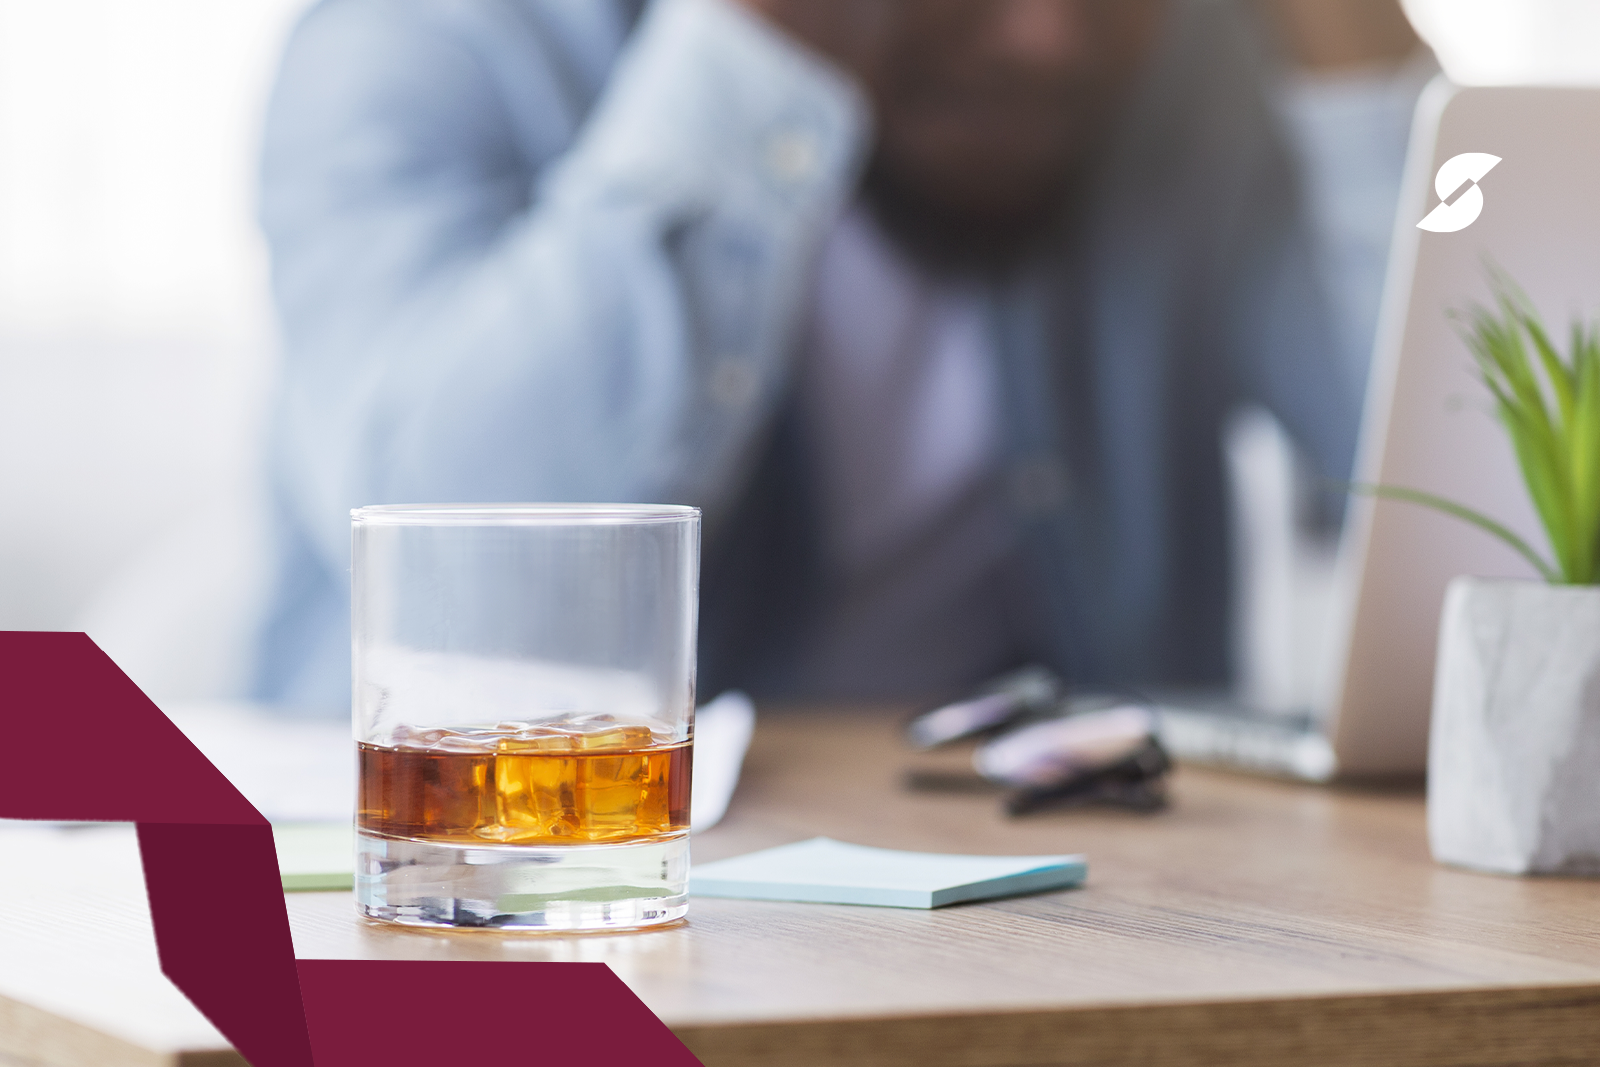 No foco da imagem temos um copo de bebida alcoólica em cima de uma mesa de trabalho. No fundo, desfocado, um homem com as mãos na cabeça, com expressão desanimada.